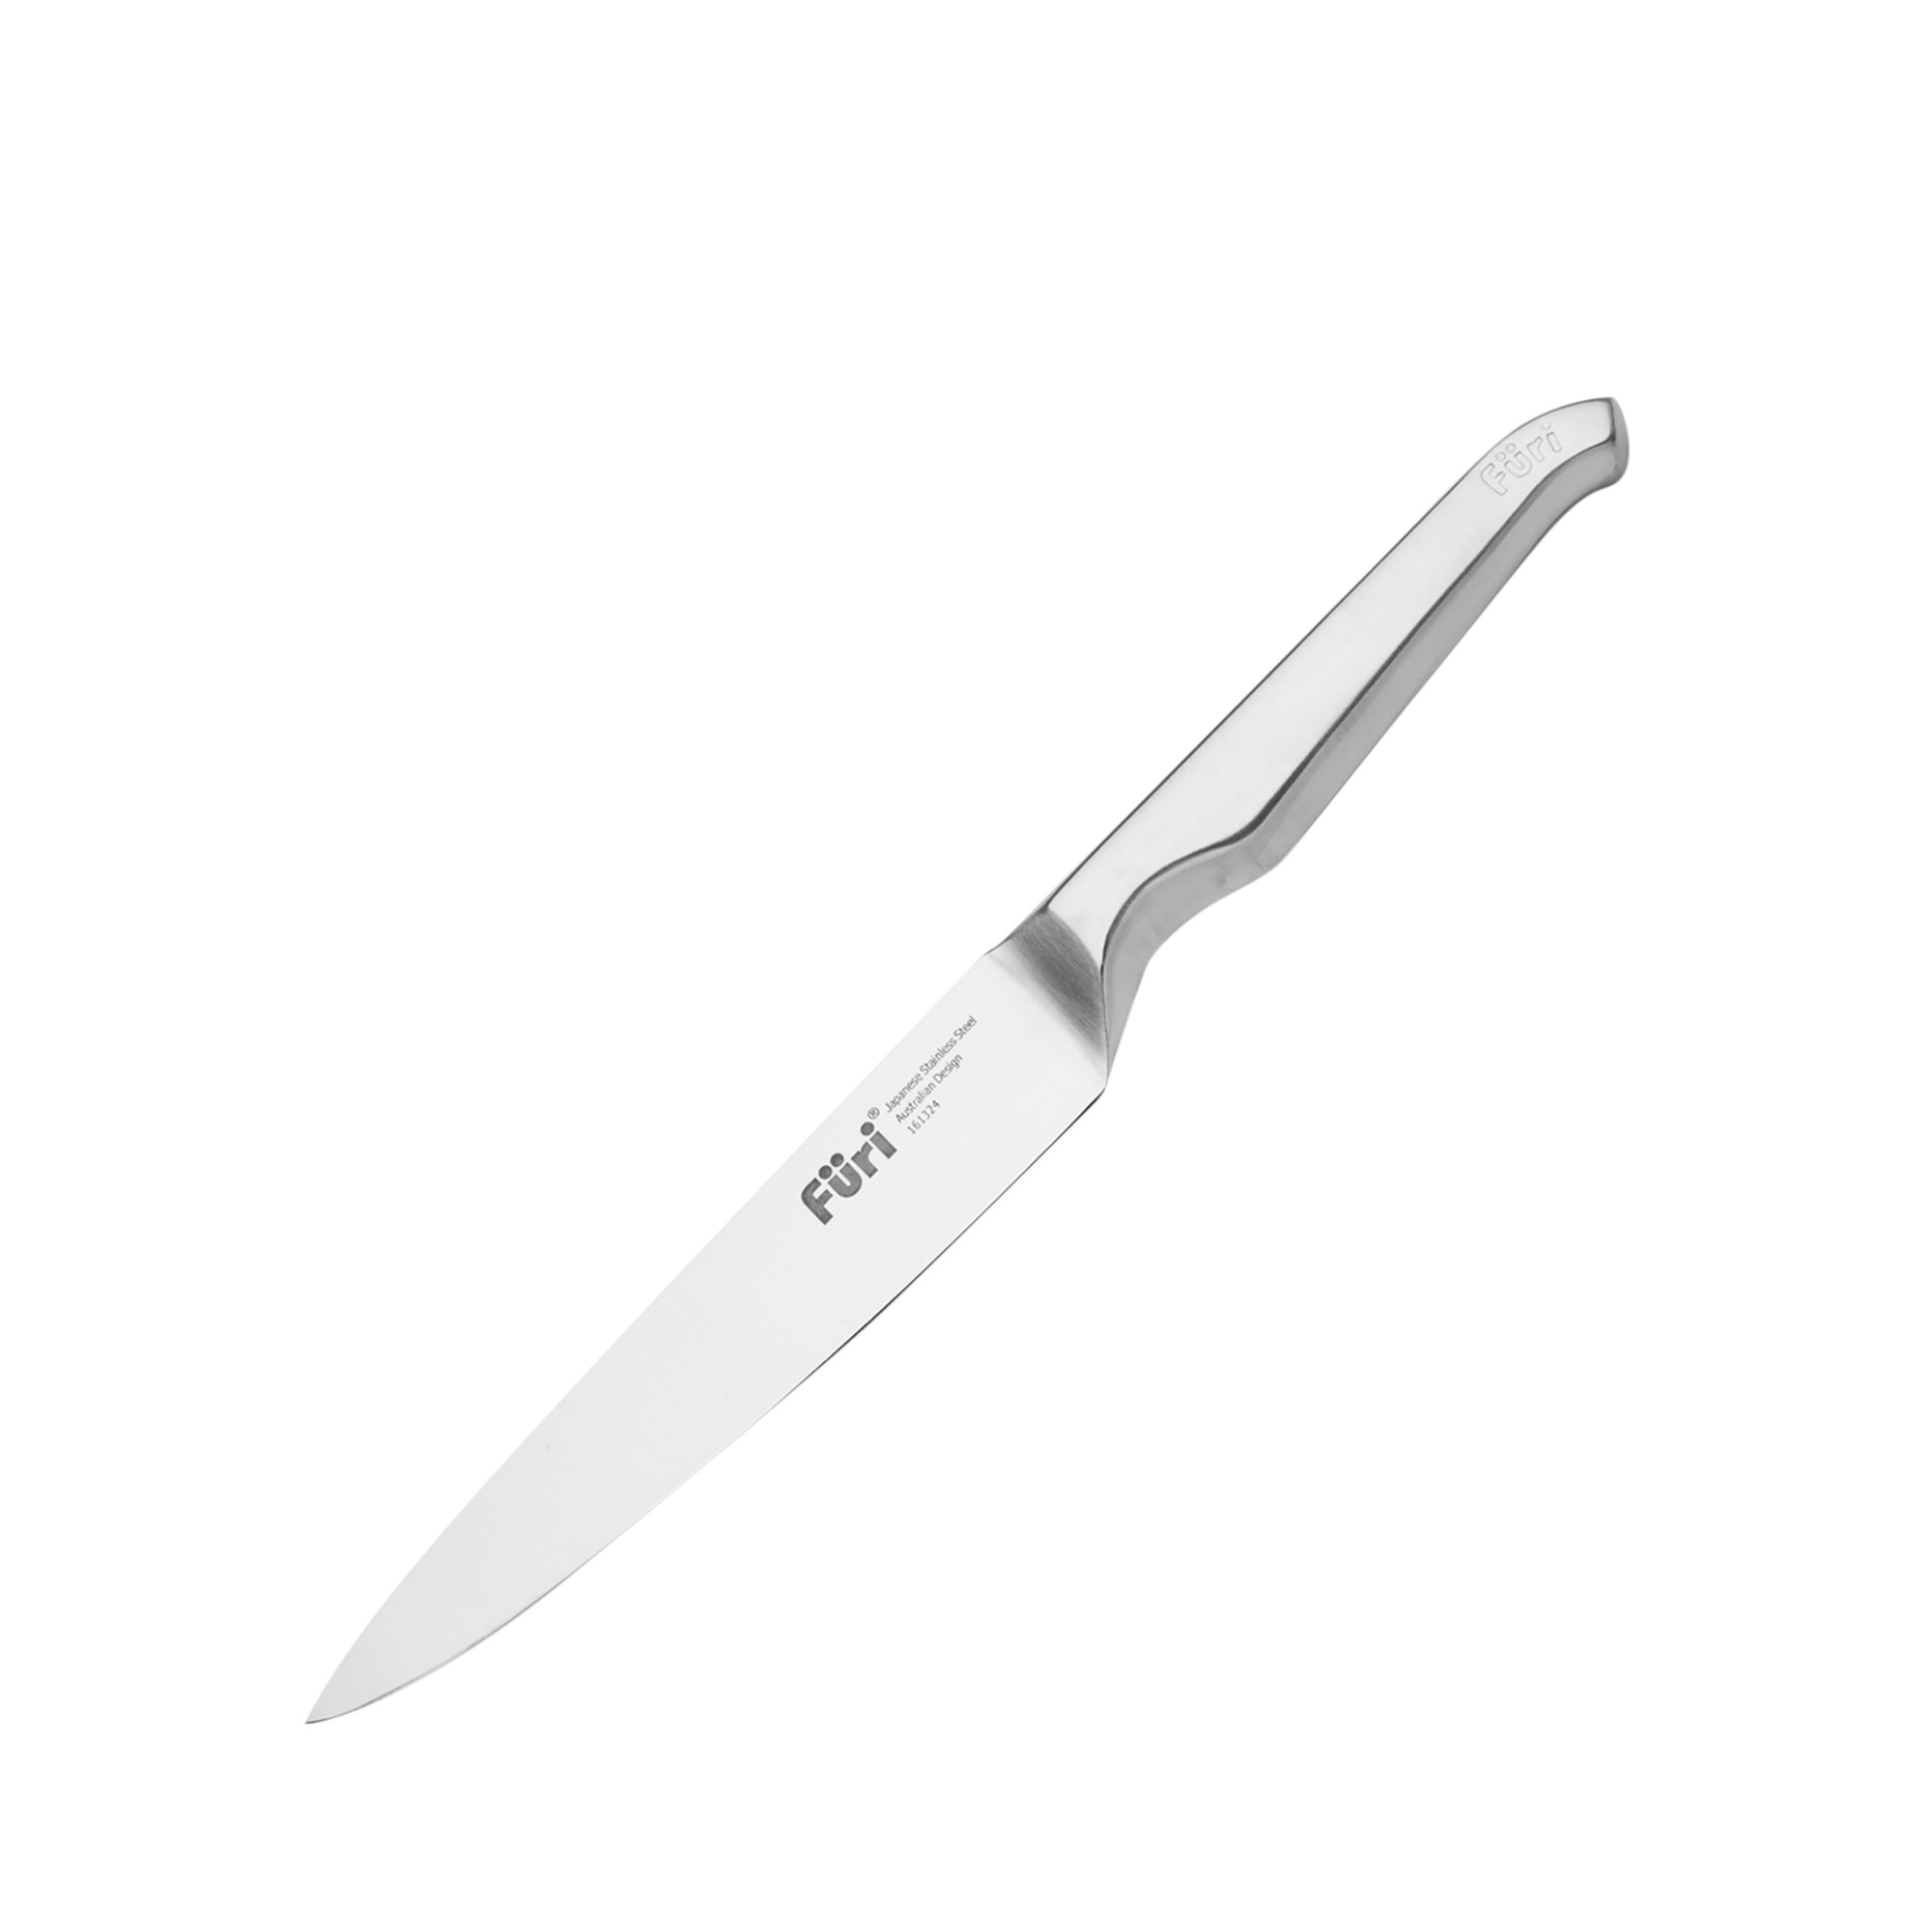 Furi Pro Utility Knife 15cm Image 1